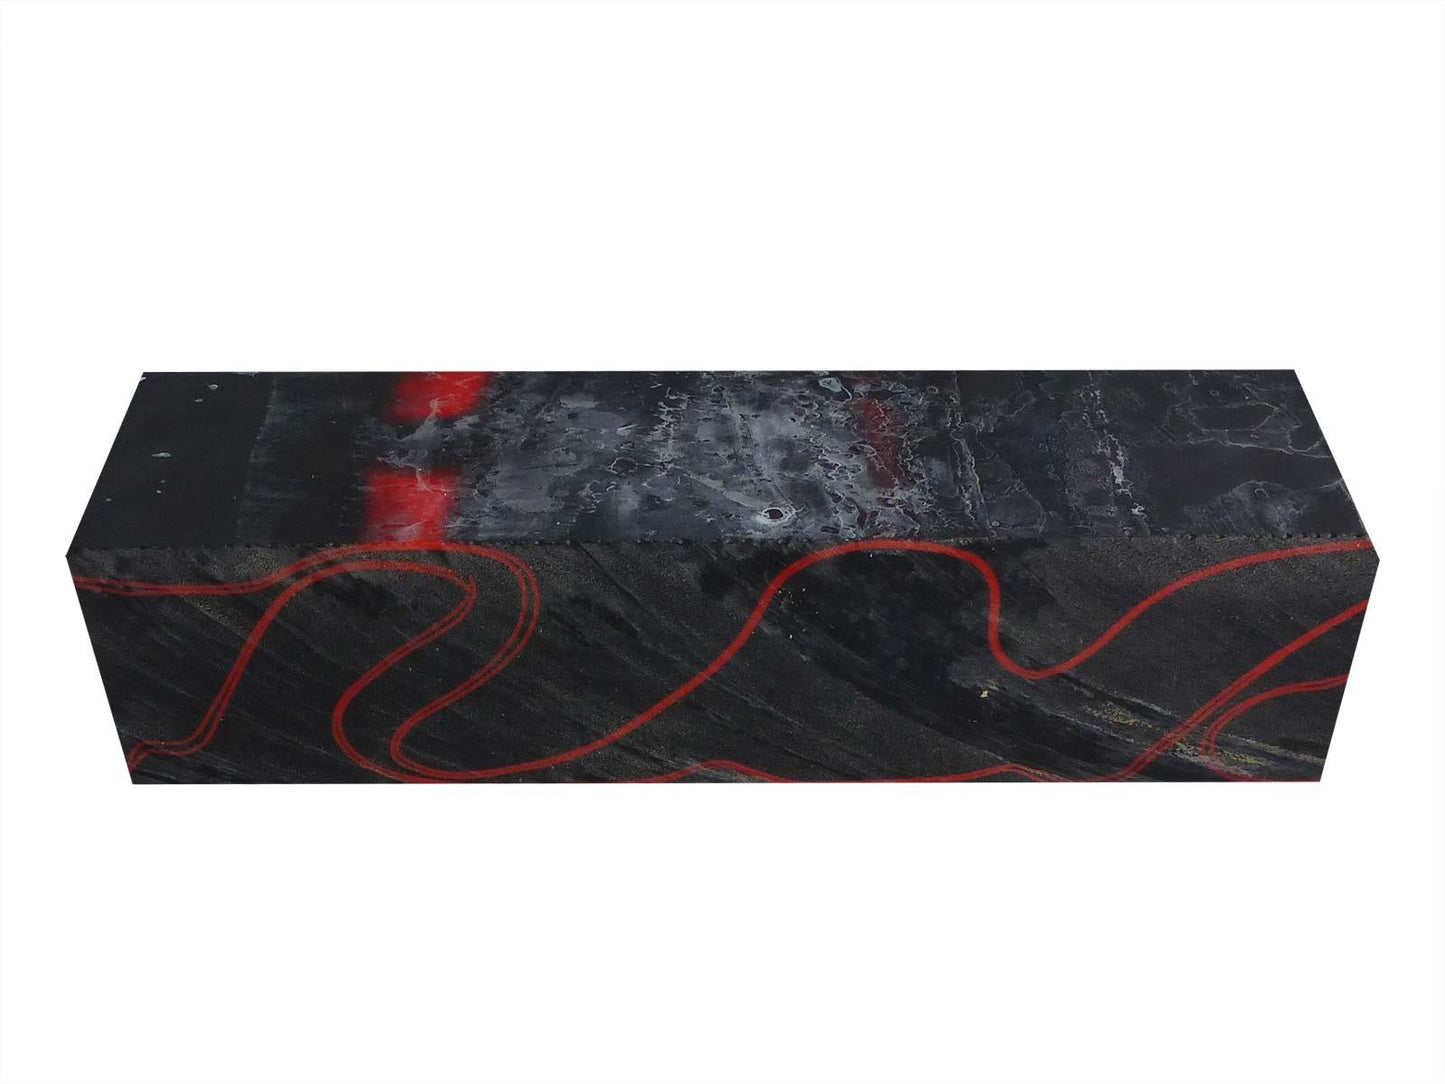 Turners' Mill Lava Flow Abstract Kirinite Acrylic Knife Block - 150x40x31mm (5.9x1.57x1.22")